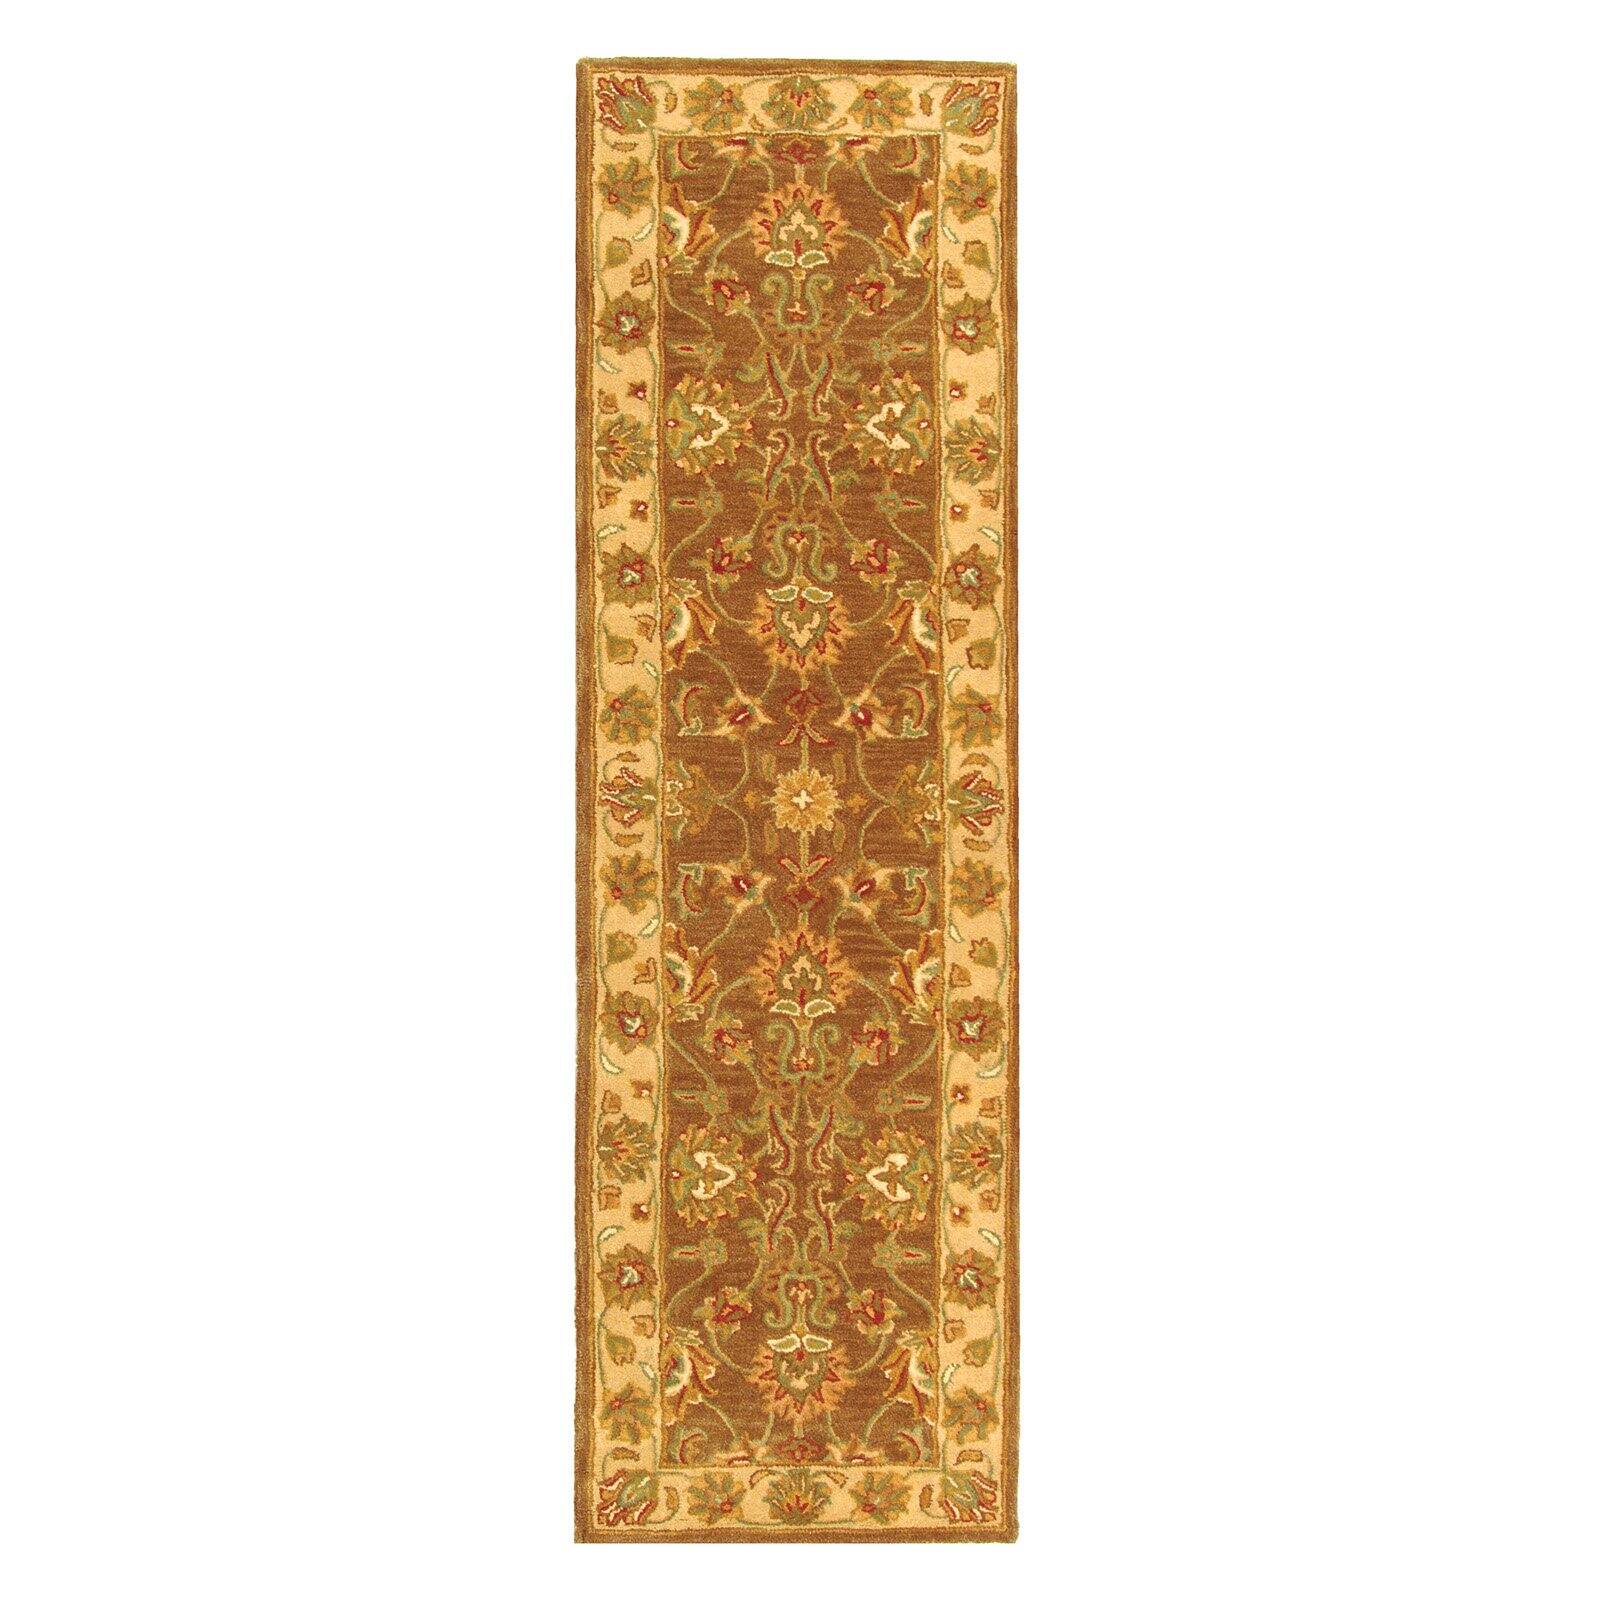 SAFAVIEH Heritage Regis Traditional Wool Runner Rug, Brown/Ivory, 2'3" x 12' - image 3 of 9